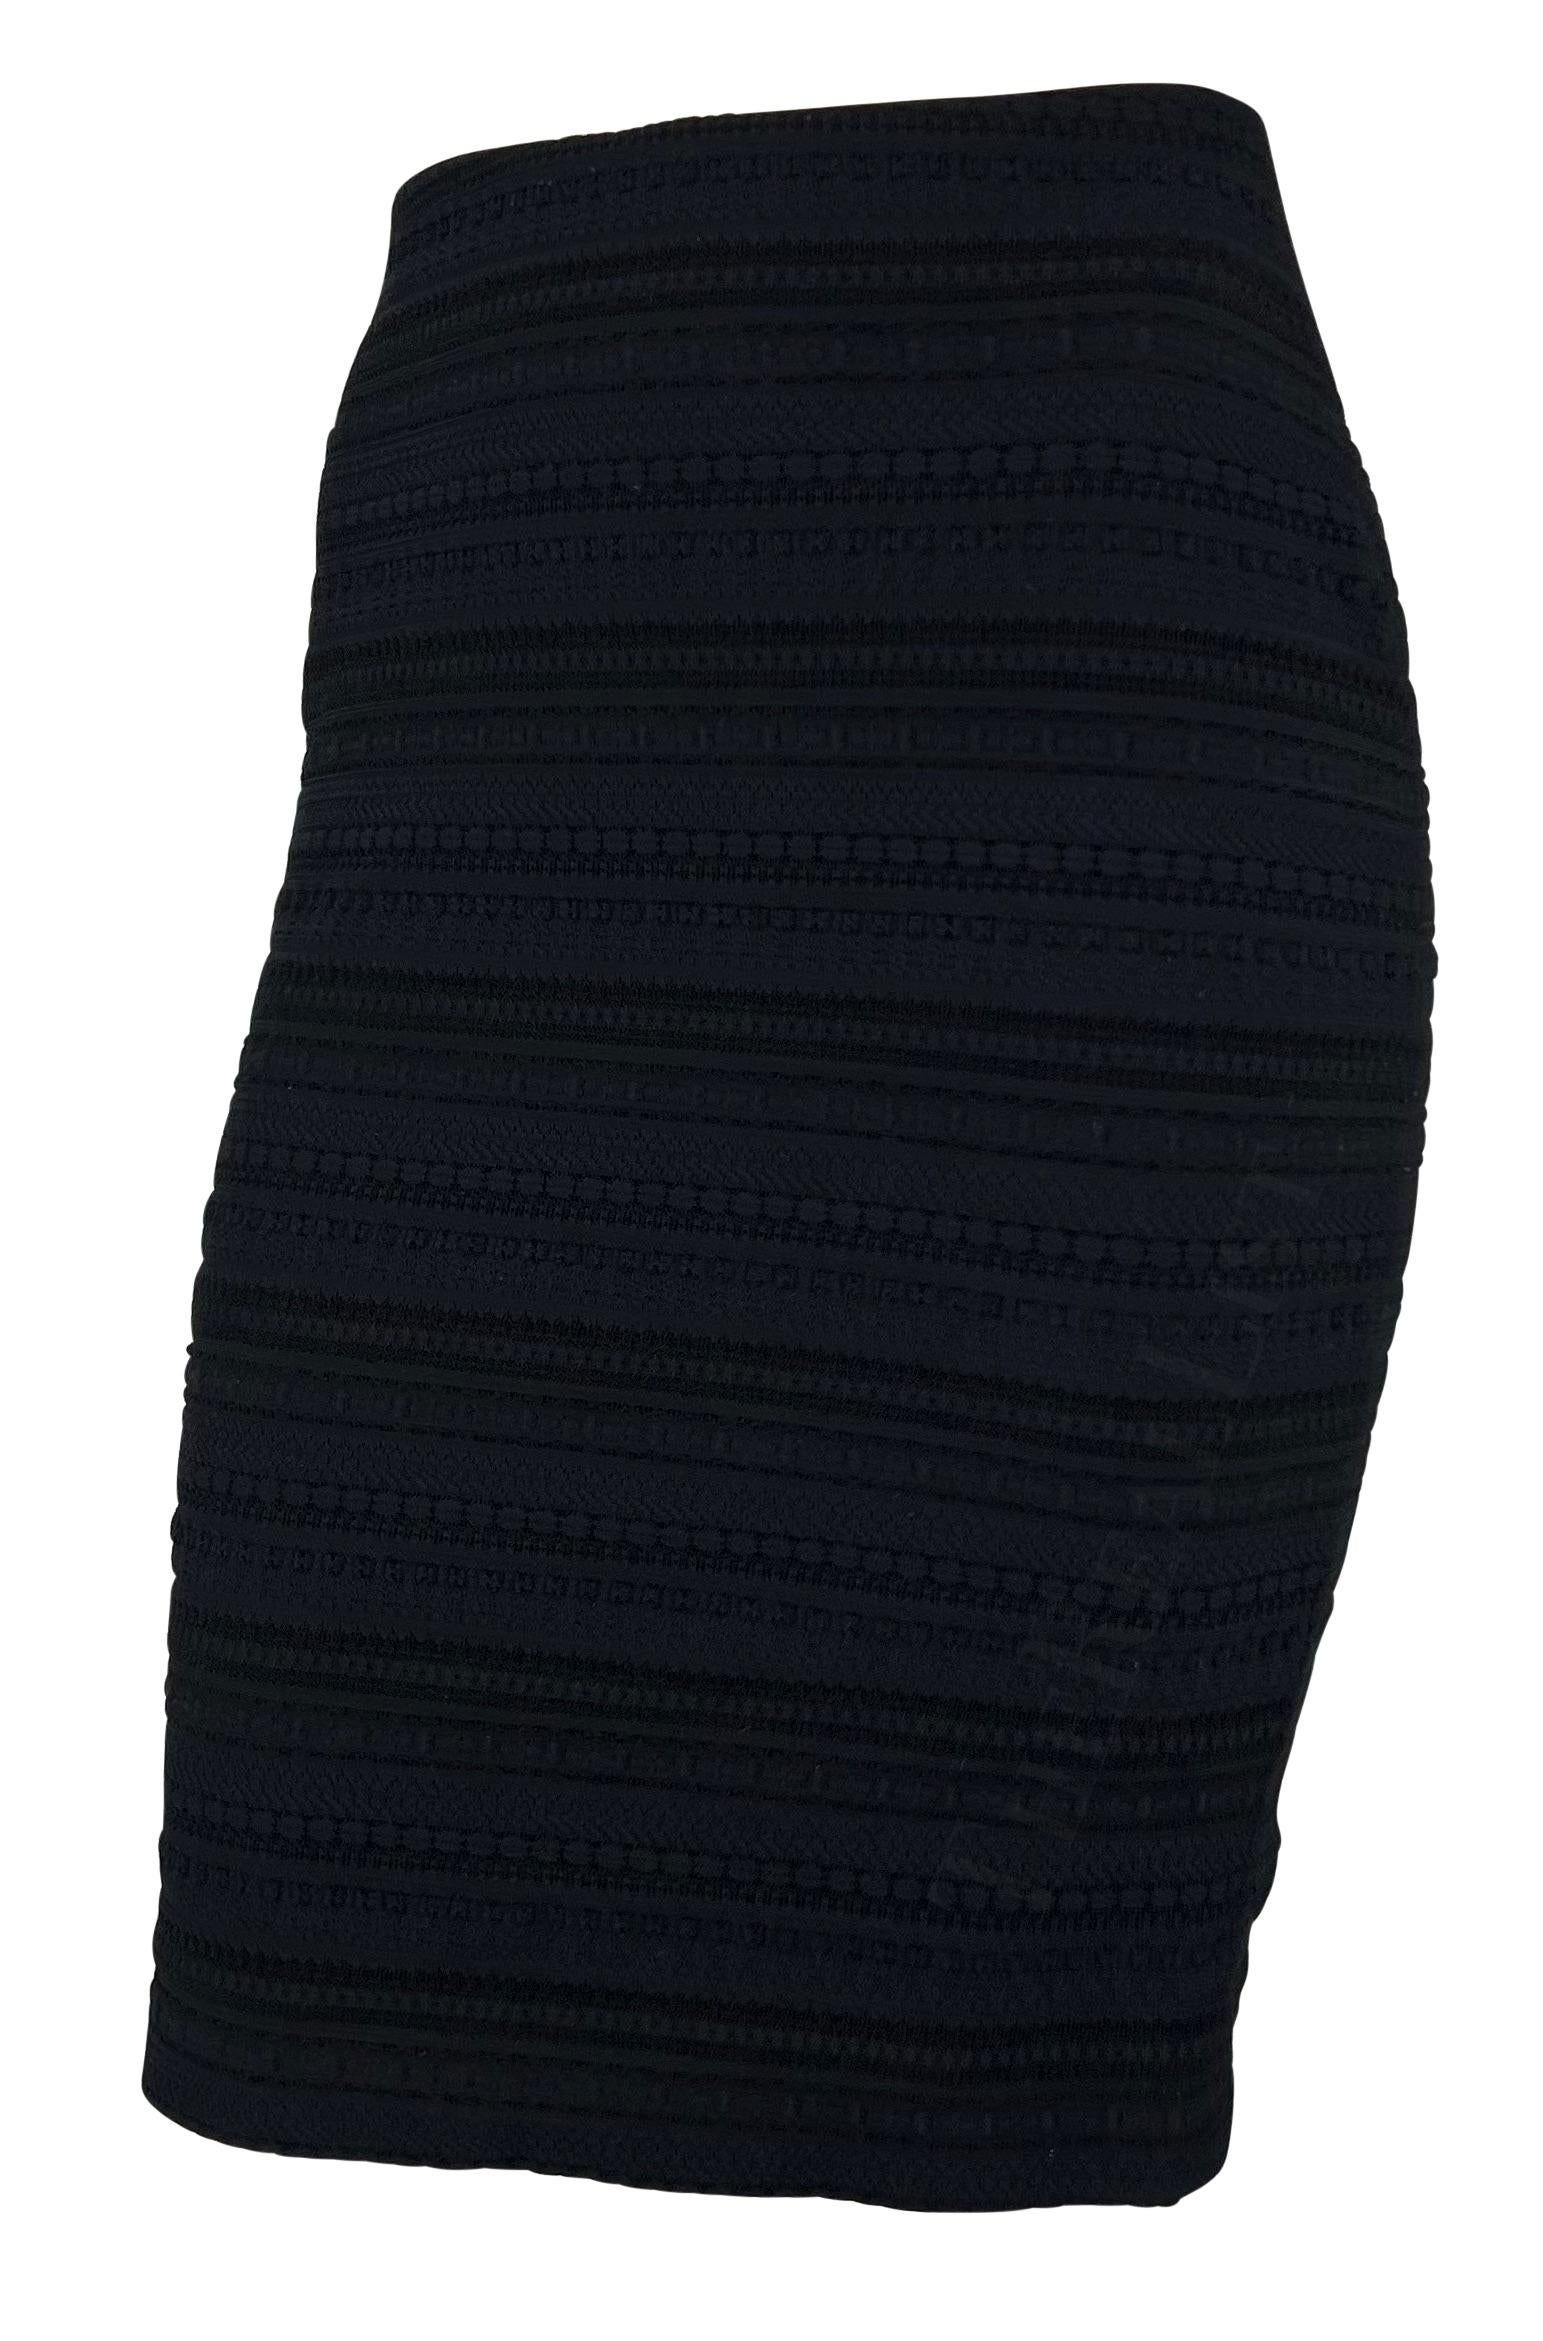 Nous vous présentons une fabuleuse jupe crayon Dolce & Gabbana tissée bleu marine. Datant de la fin des années 1990, cette jupe à taille haute présente un motif tissé complexe et est complétée par une petite fente dans le dos. 

Mesures